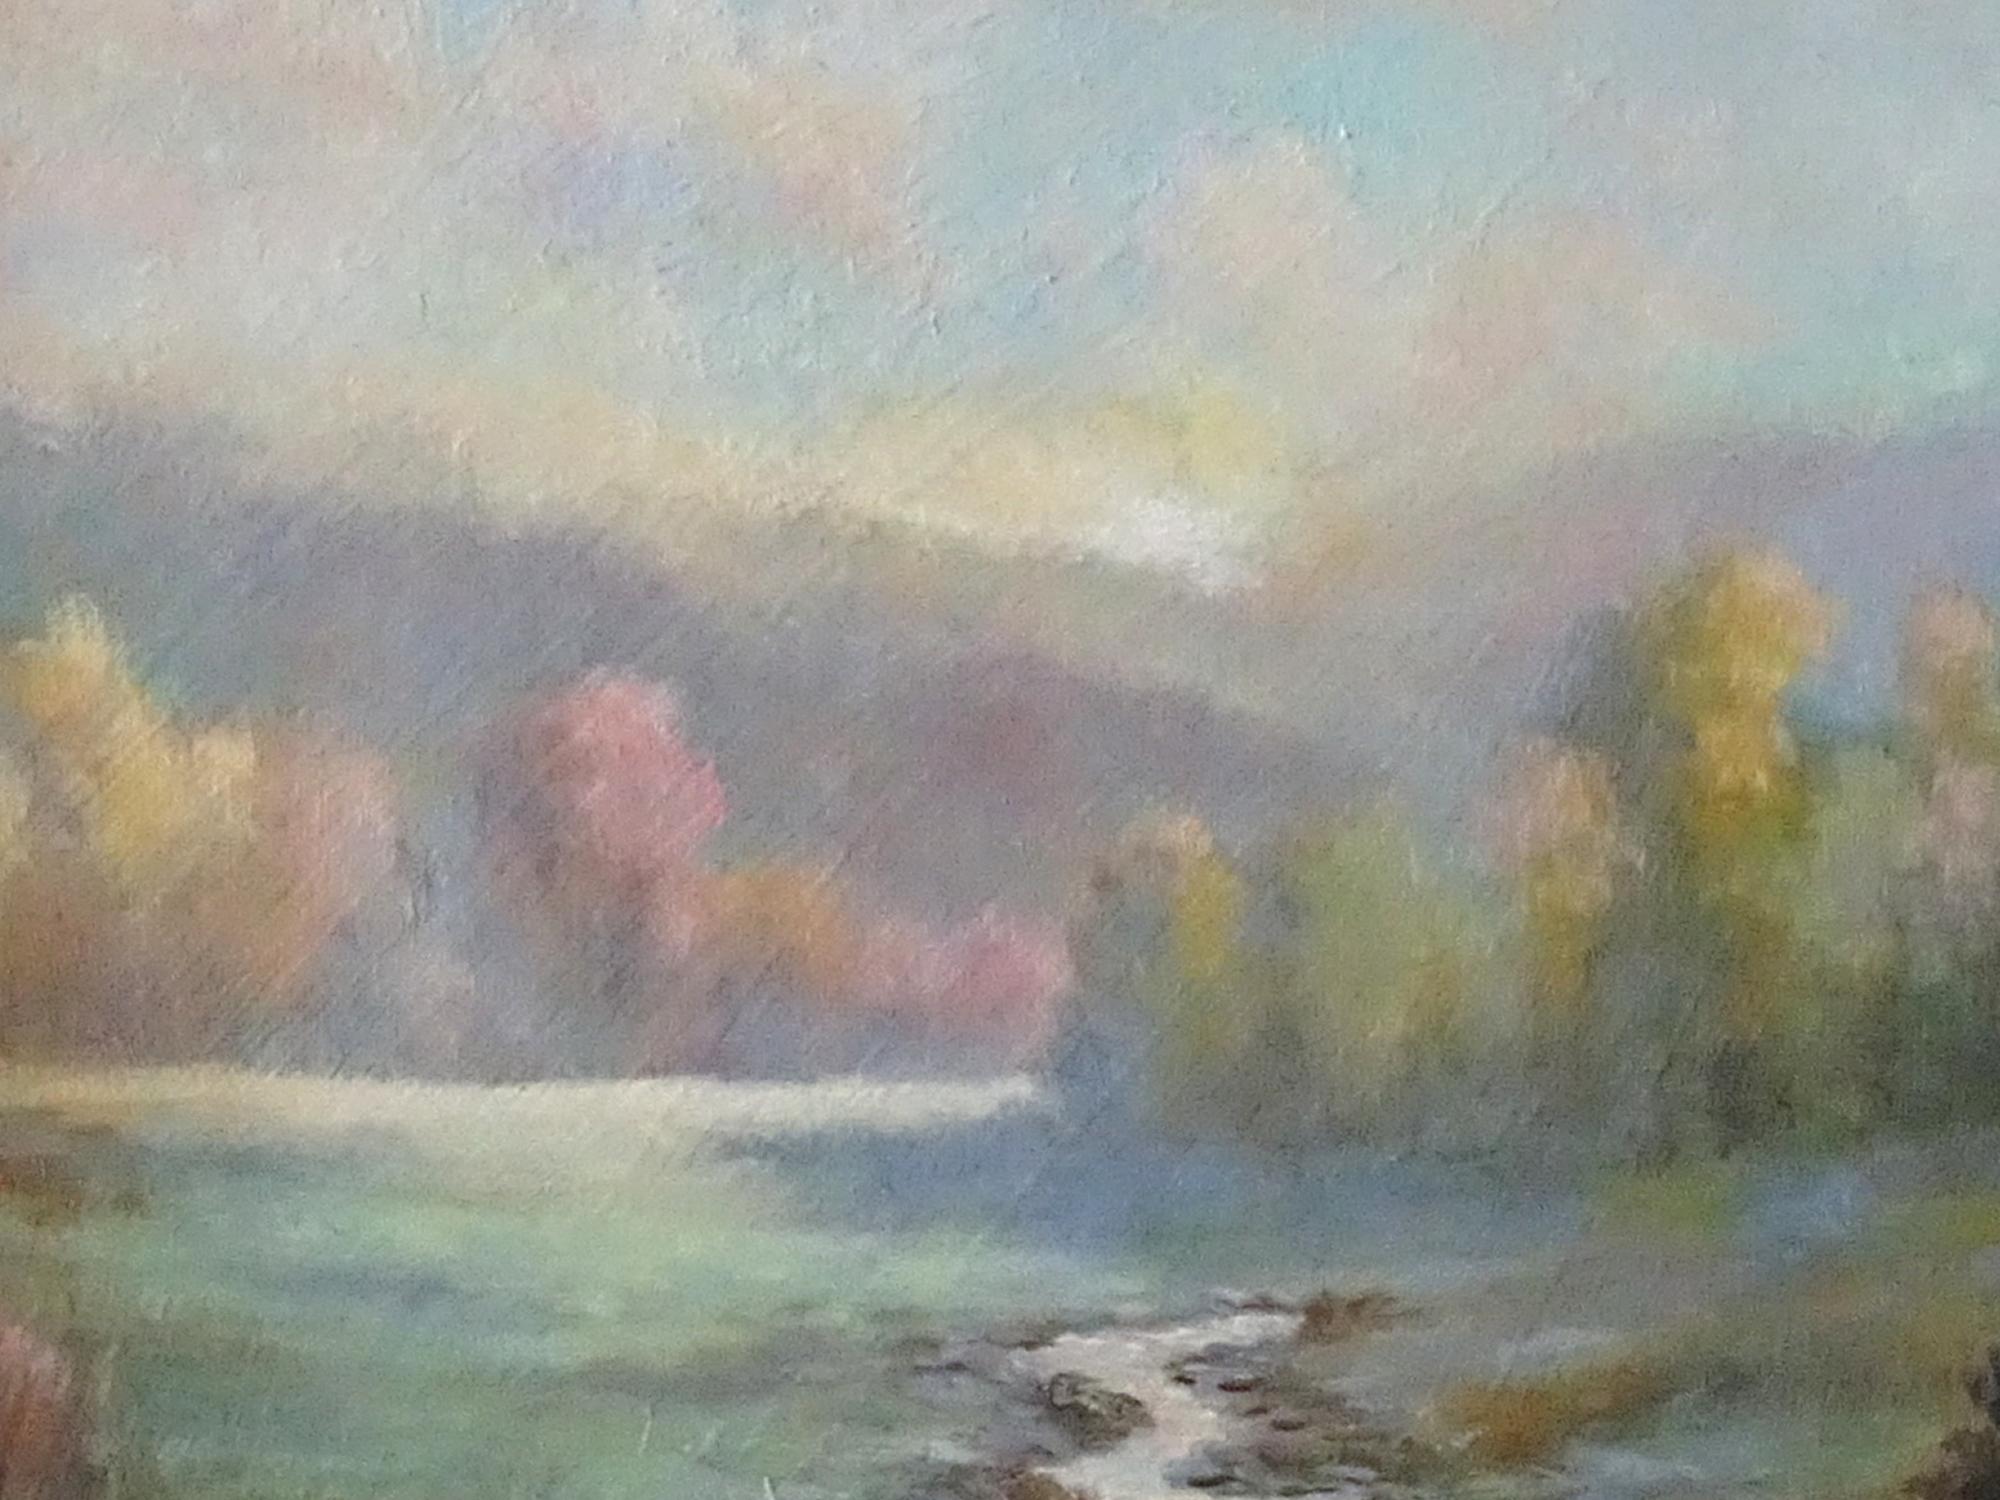 <p>Commentaires de l'artiste<br>L'artiste Gail Greene montre un ruisseau pittoresque dans une impression lumineuse utilisant des tons doux. La lumière du matin traverse la crête et illumine la prairie bruissante en contrebas. La palette colorée de